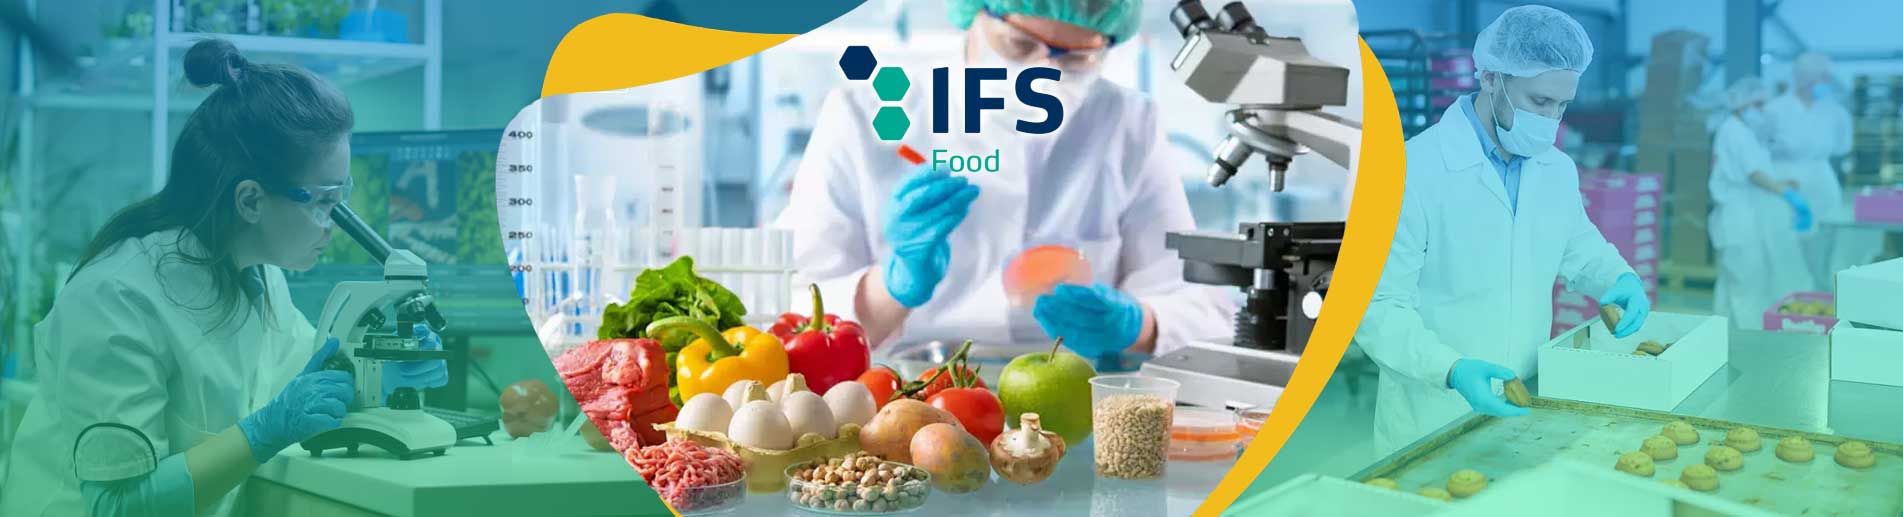 IFS ULUSLARARASI GIDA STANDARDI Uluslararası Gıda Standardı